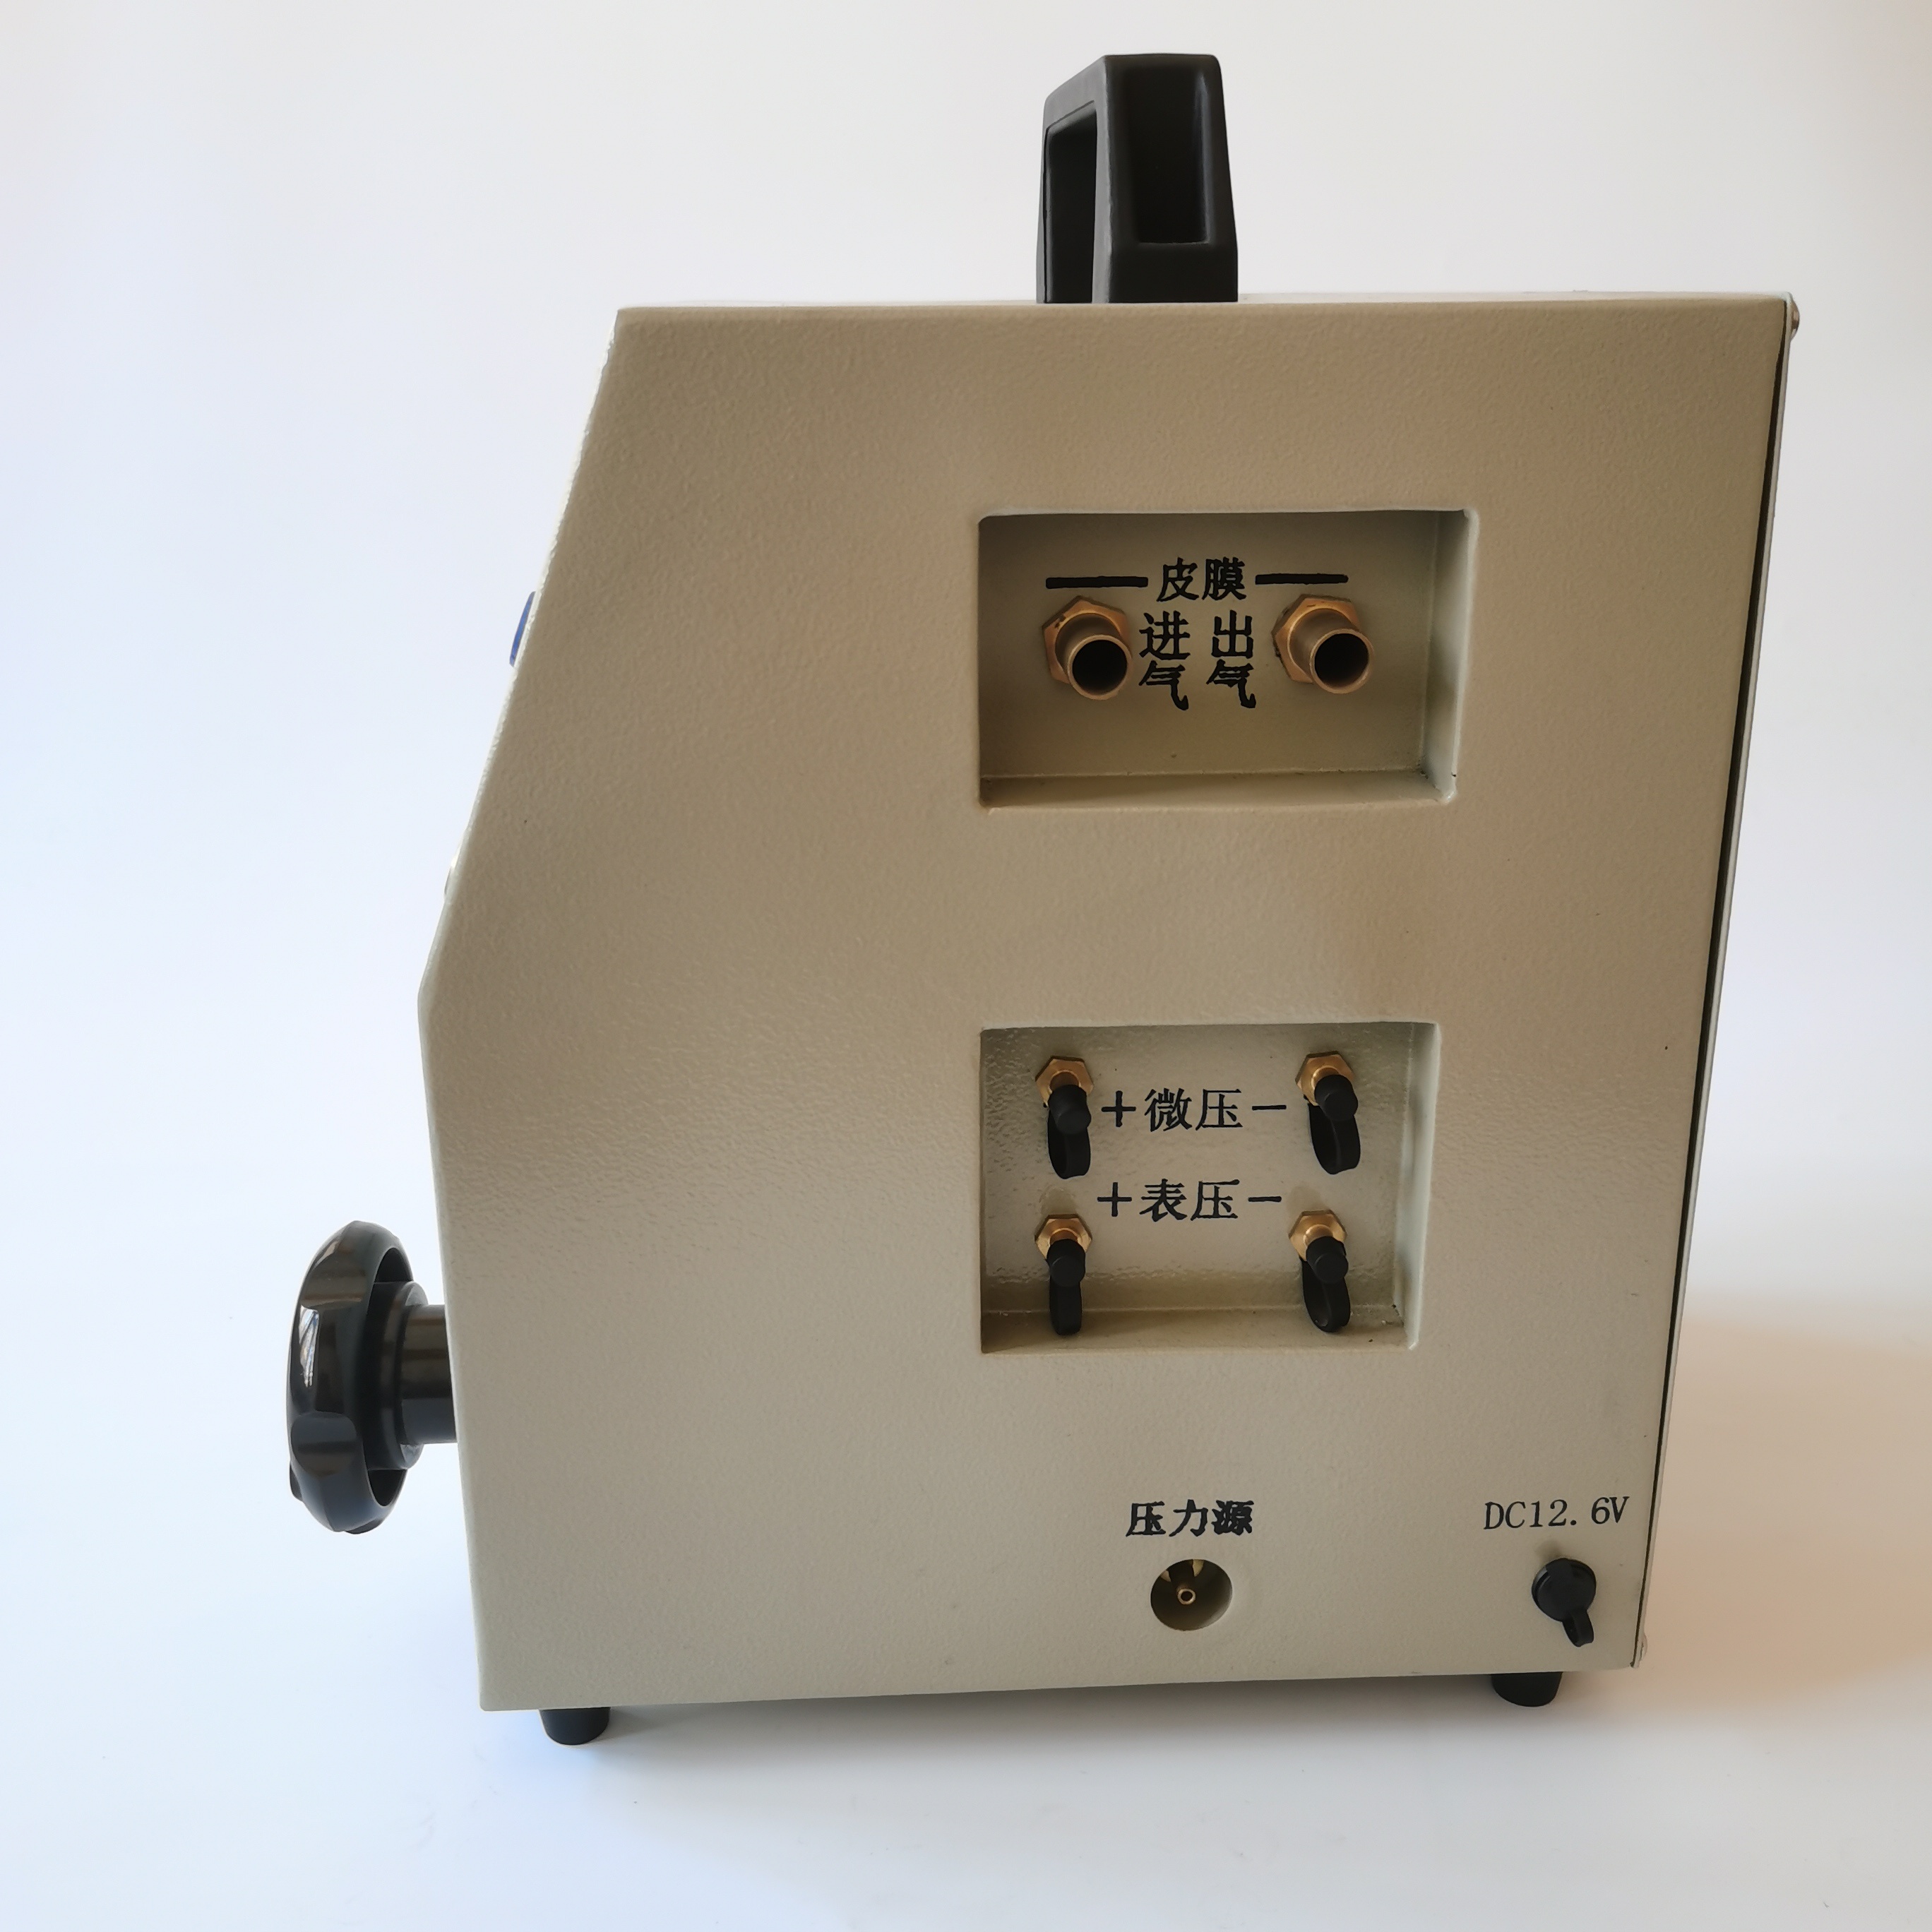 XY-A3000型便携式智能烟尘压力流量校准仪